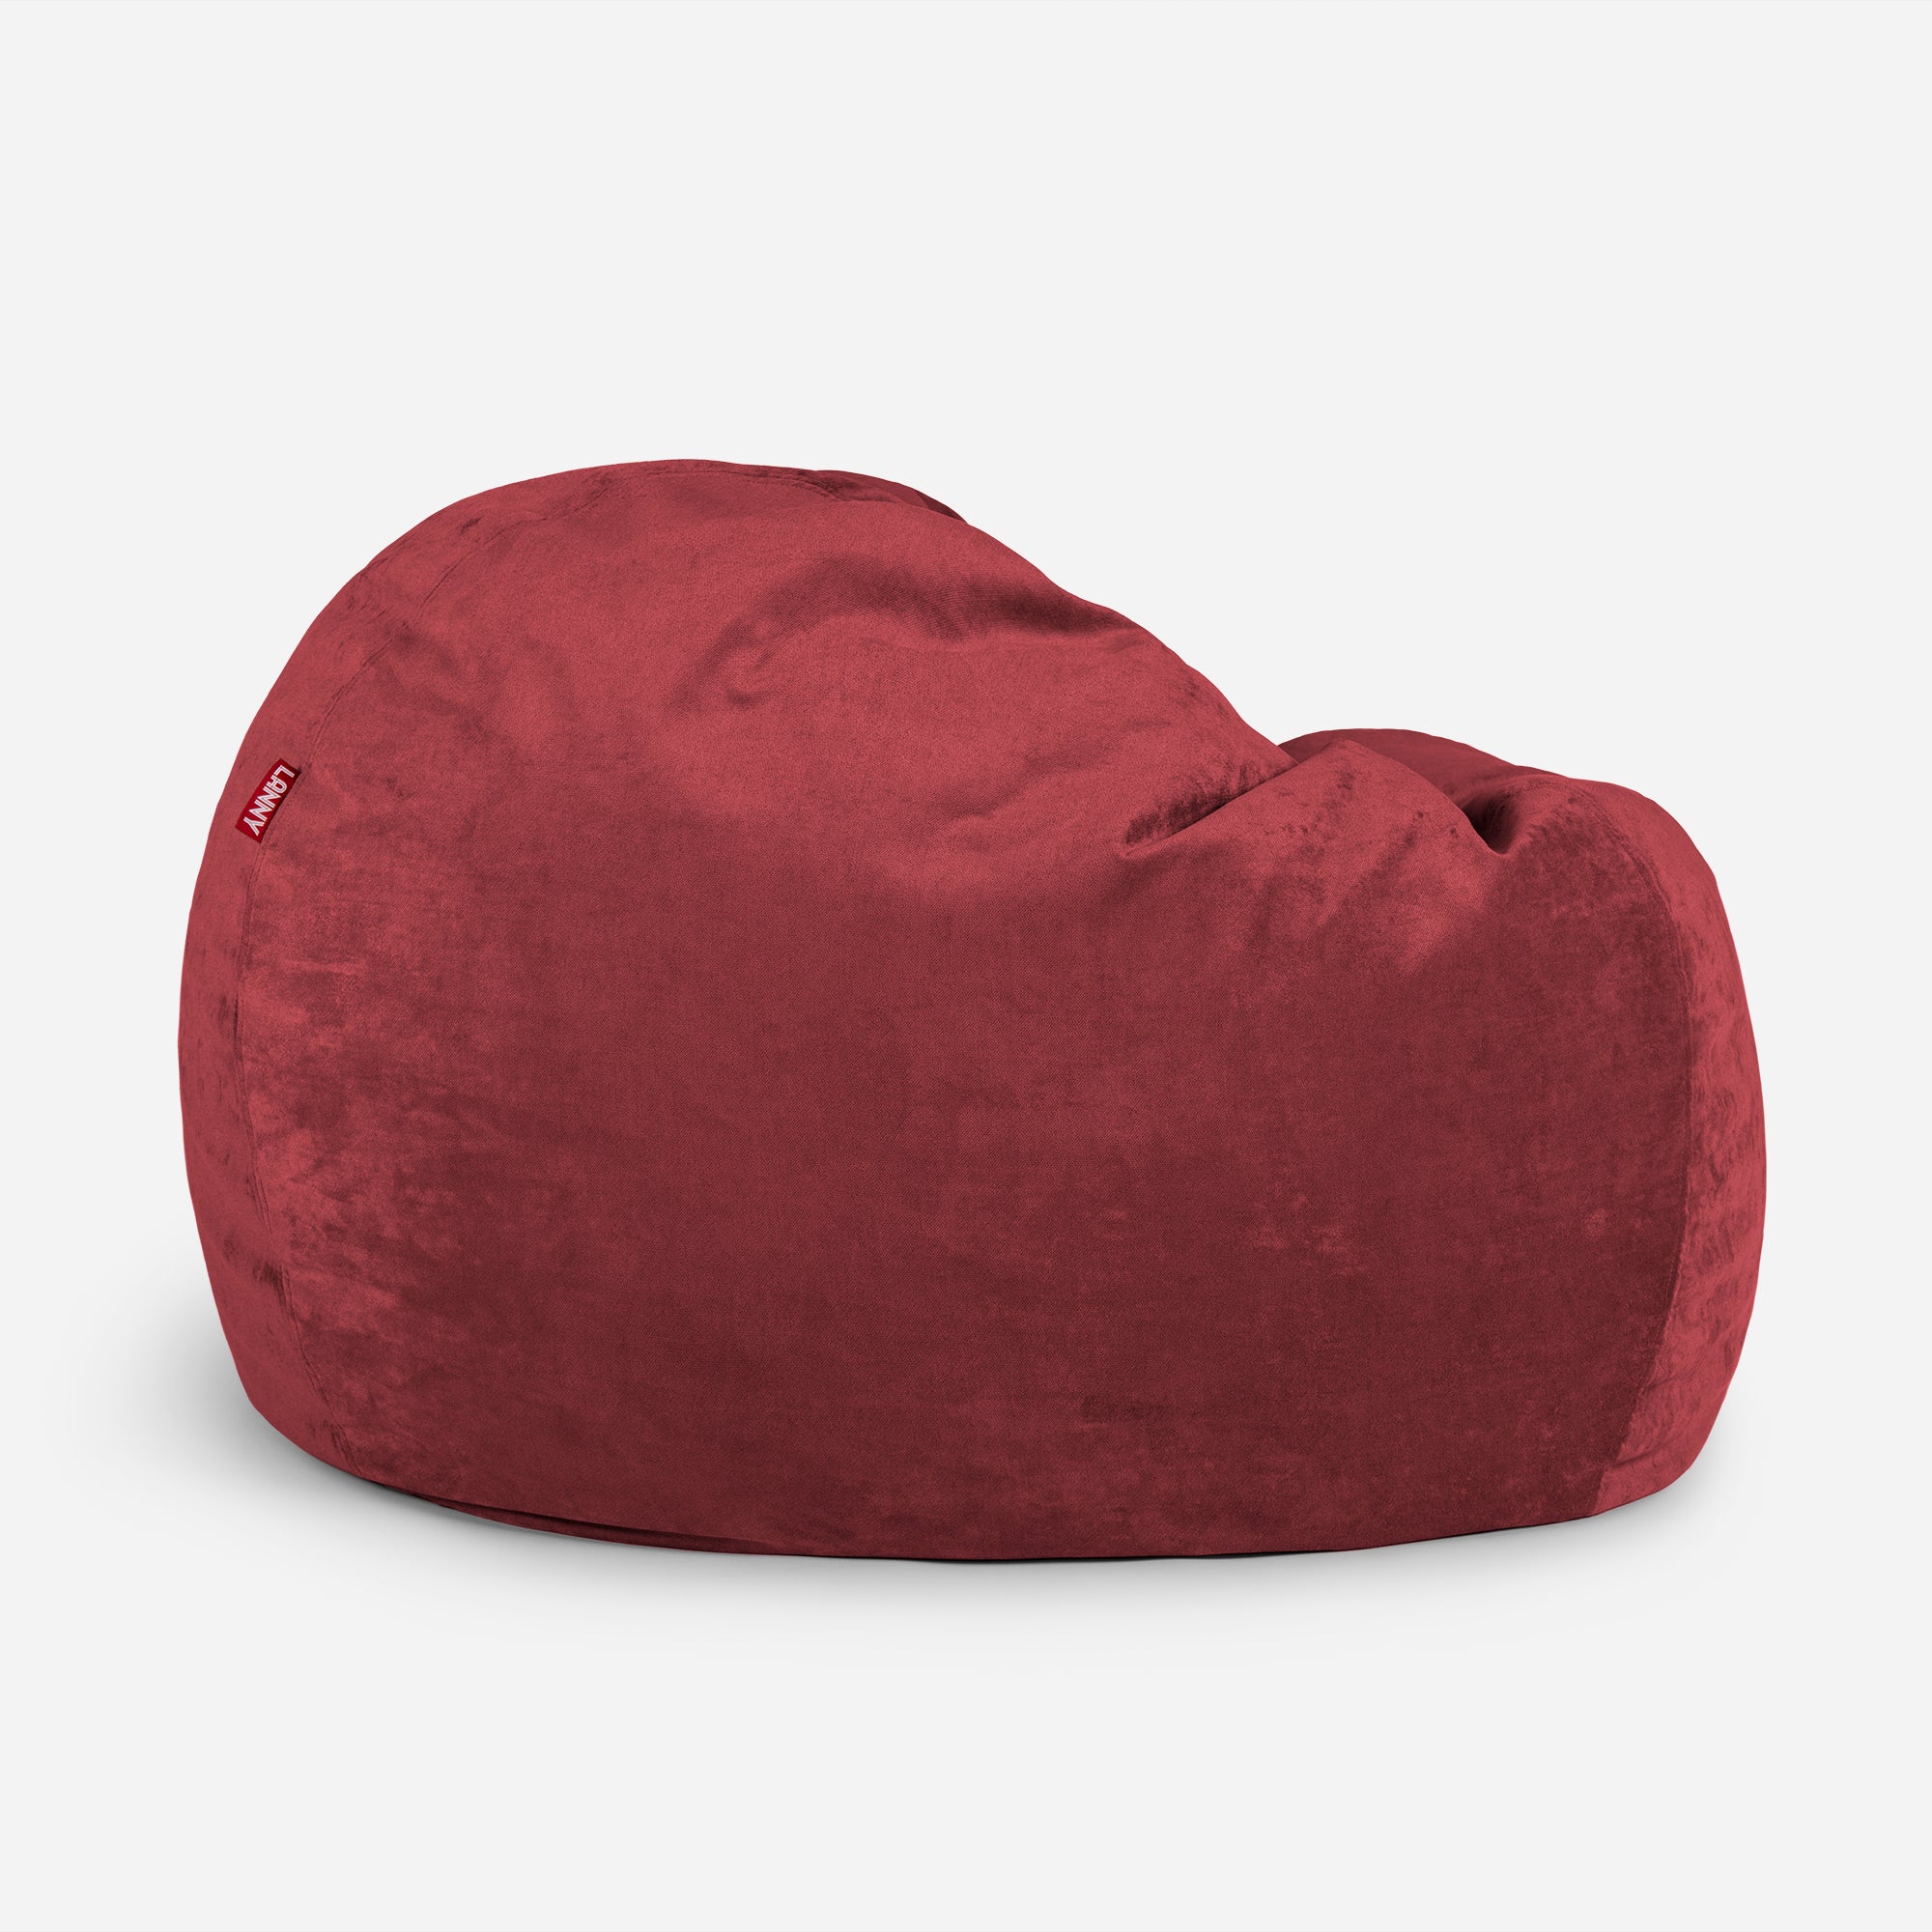 Sphere Aldo Red Bean bag